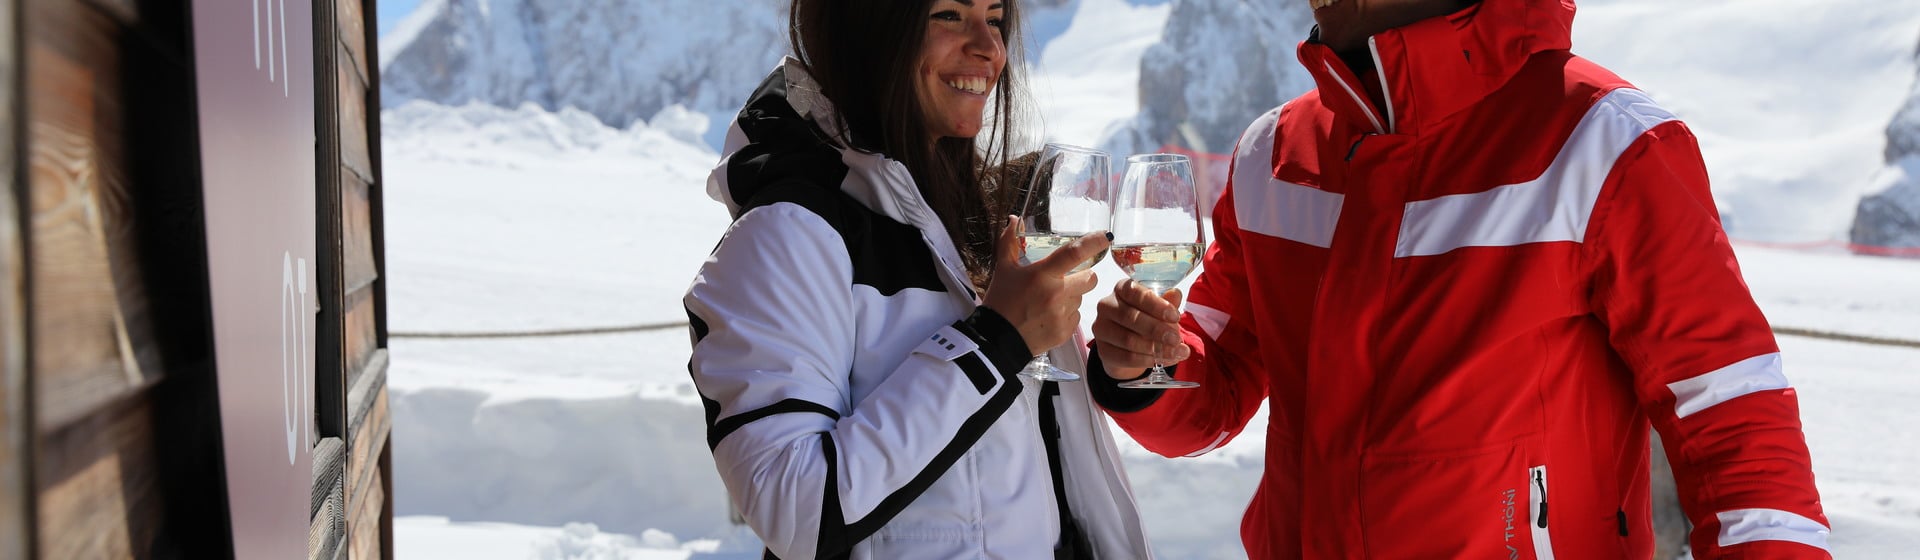 Al via la terza edizione dello Ski & Wine Arabba - Marmolada